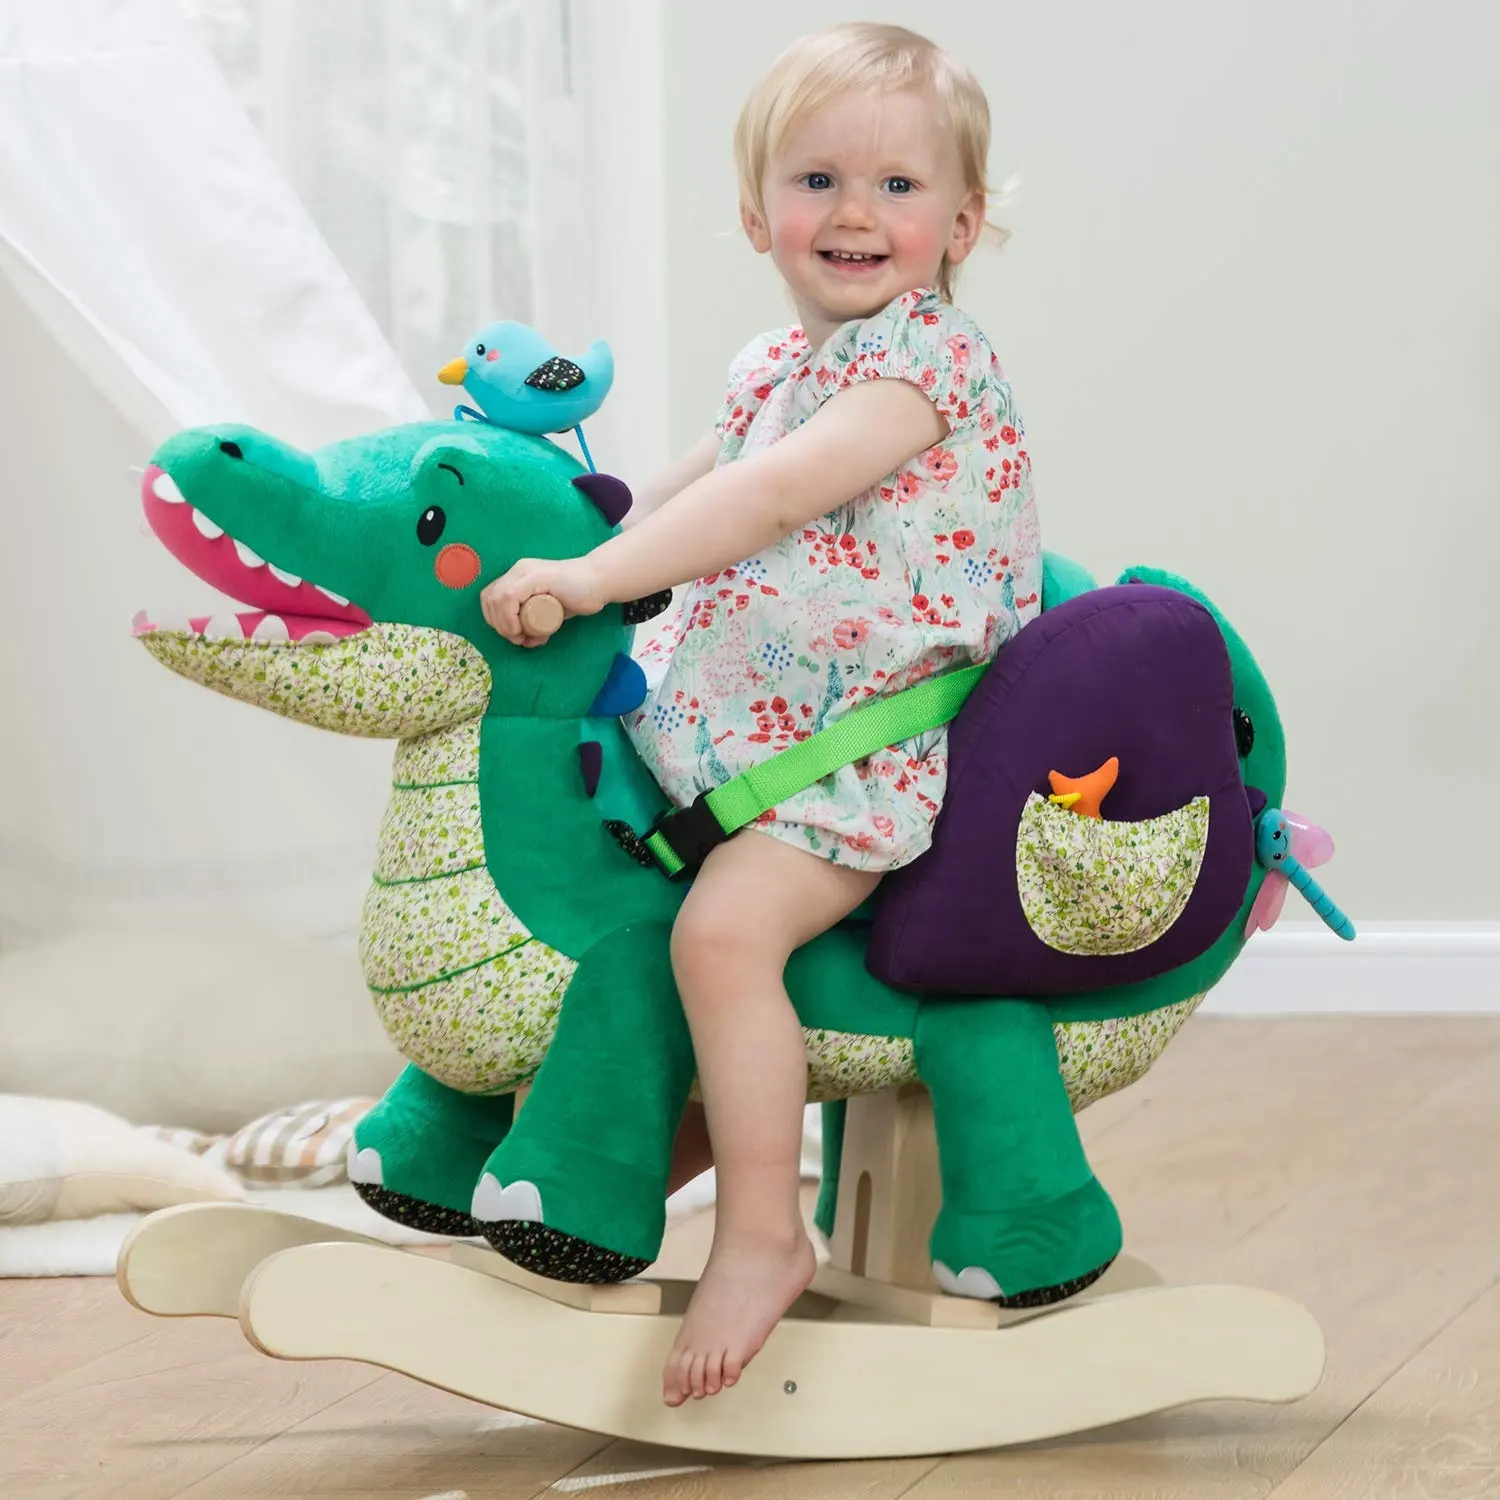 Cavalo de madeira infantil de 1-3 anos, animais de pelúcia balançar crocodilo verde para crianças